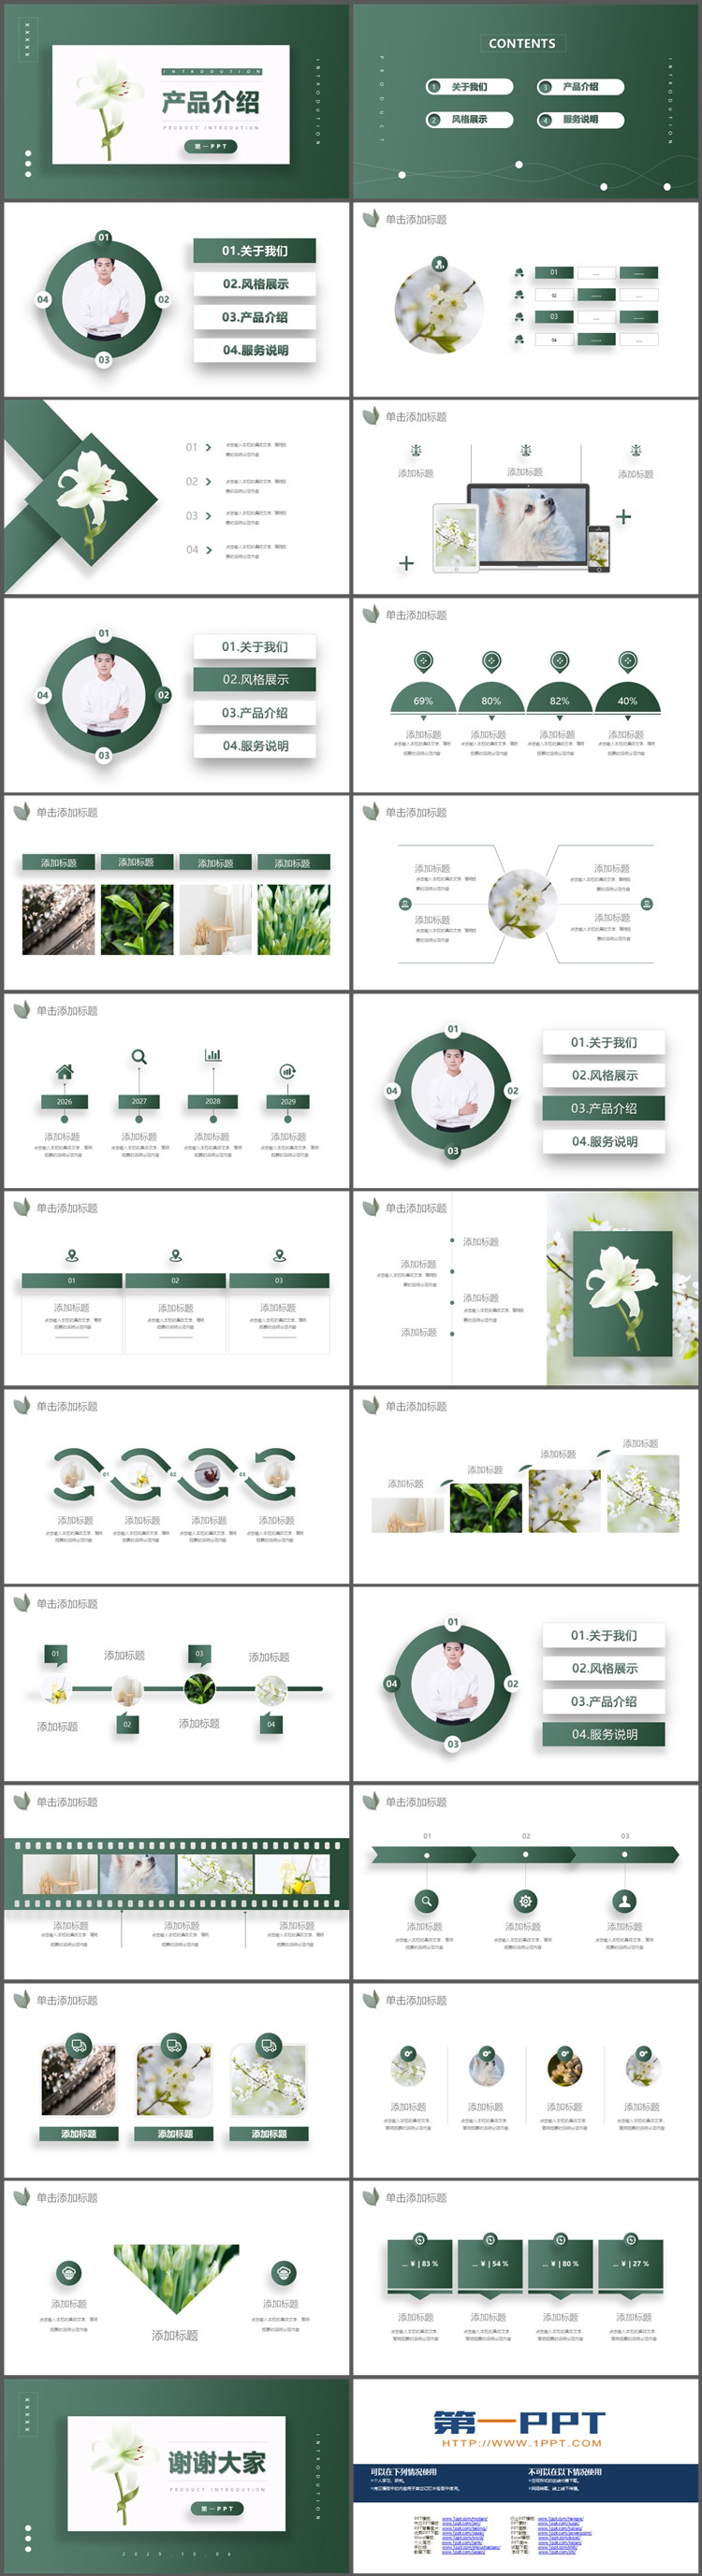 绿色清新花朵背景的产品介绍PPT模板下载